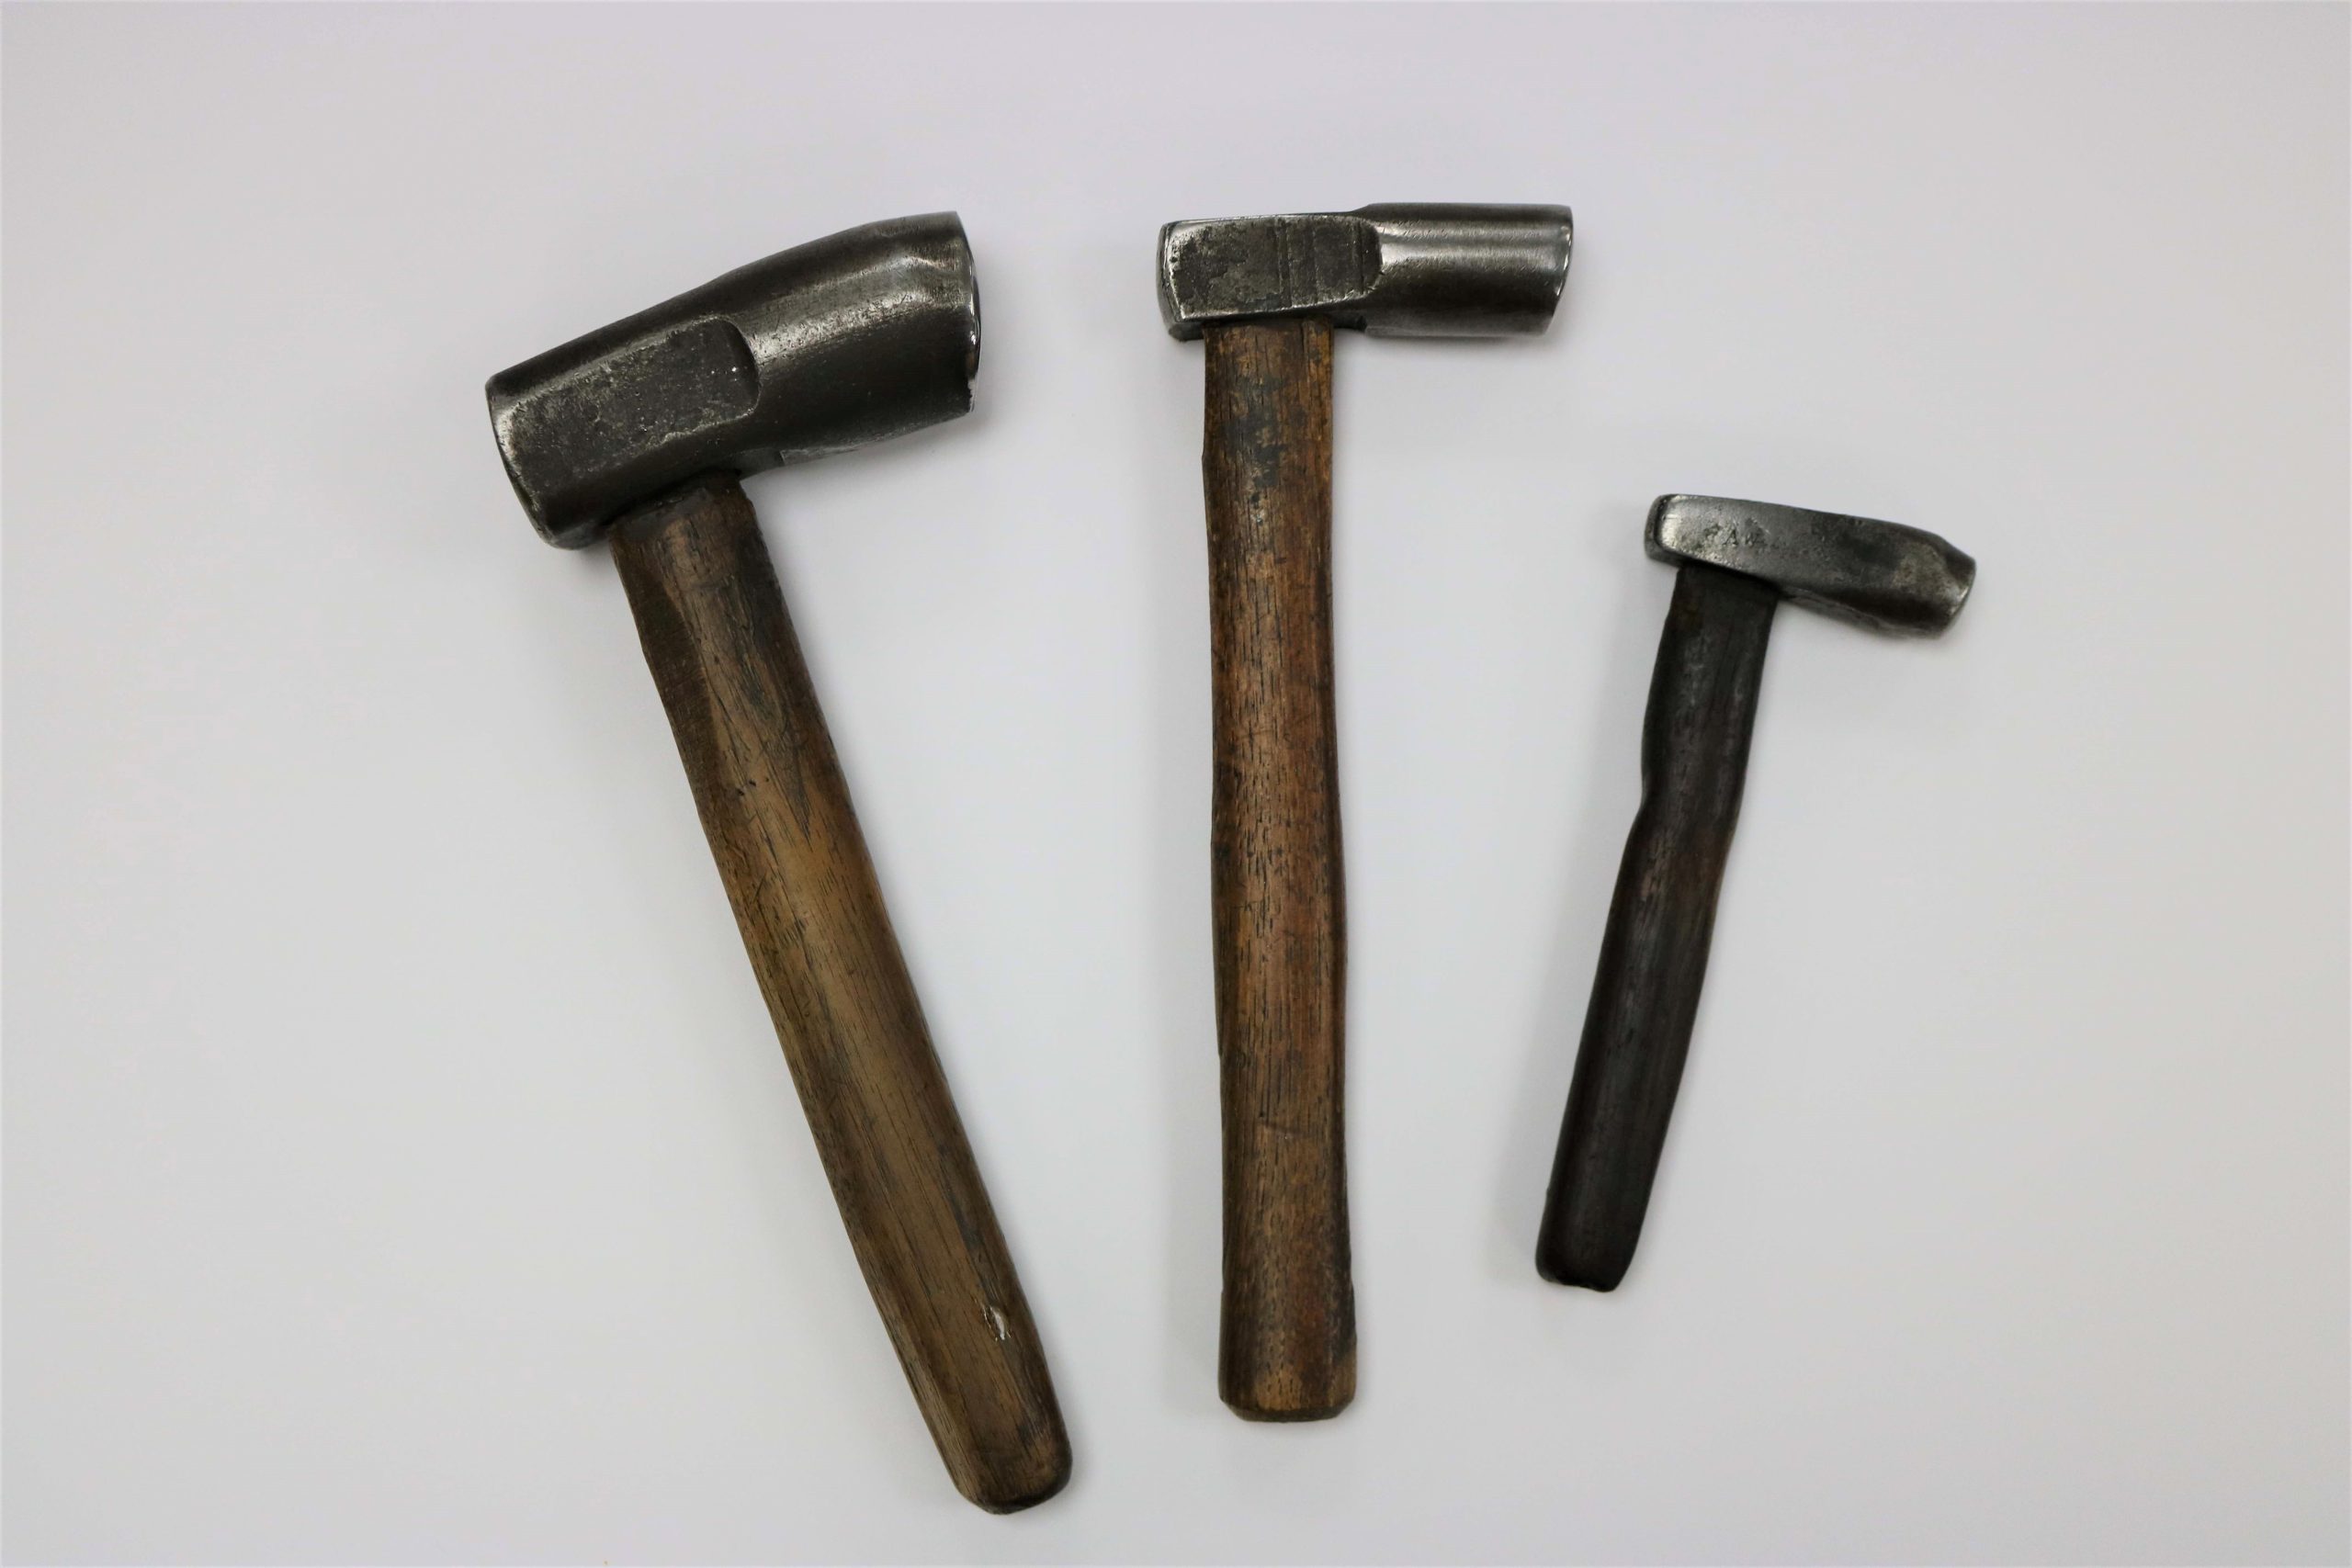 Andrew's hammers for scissor making